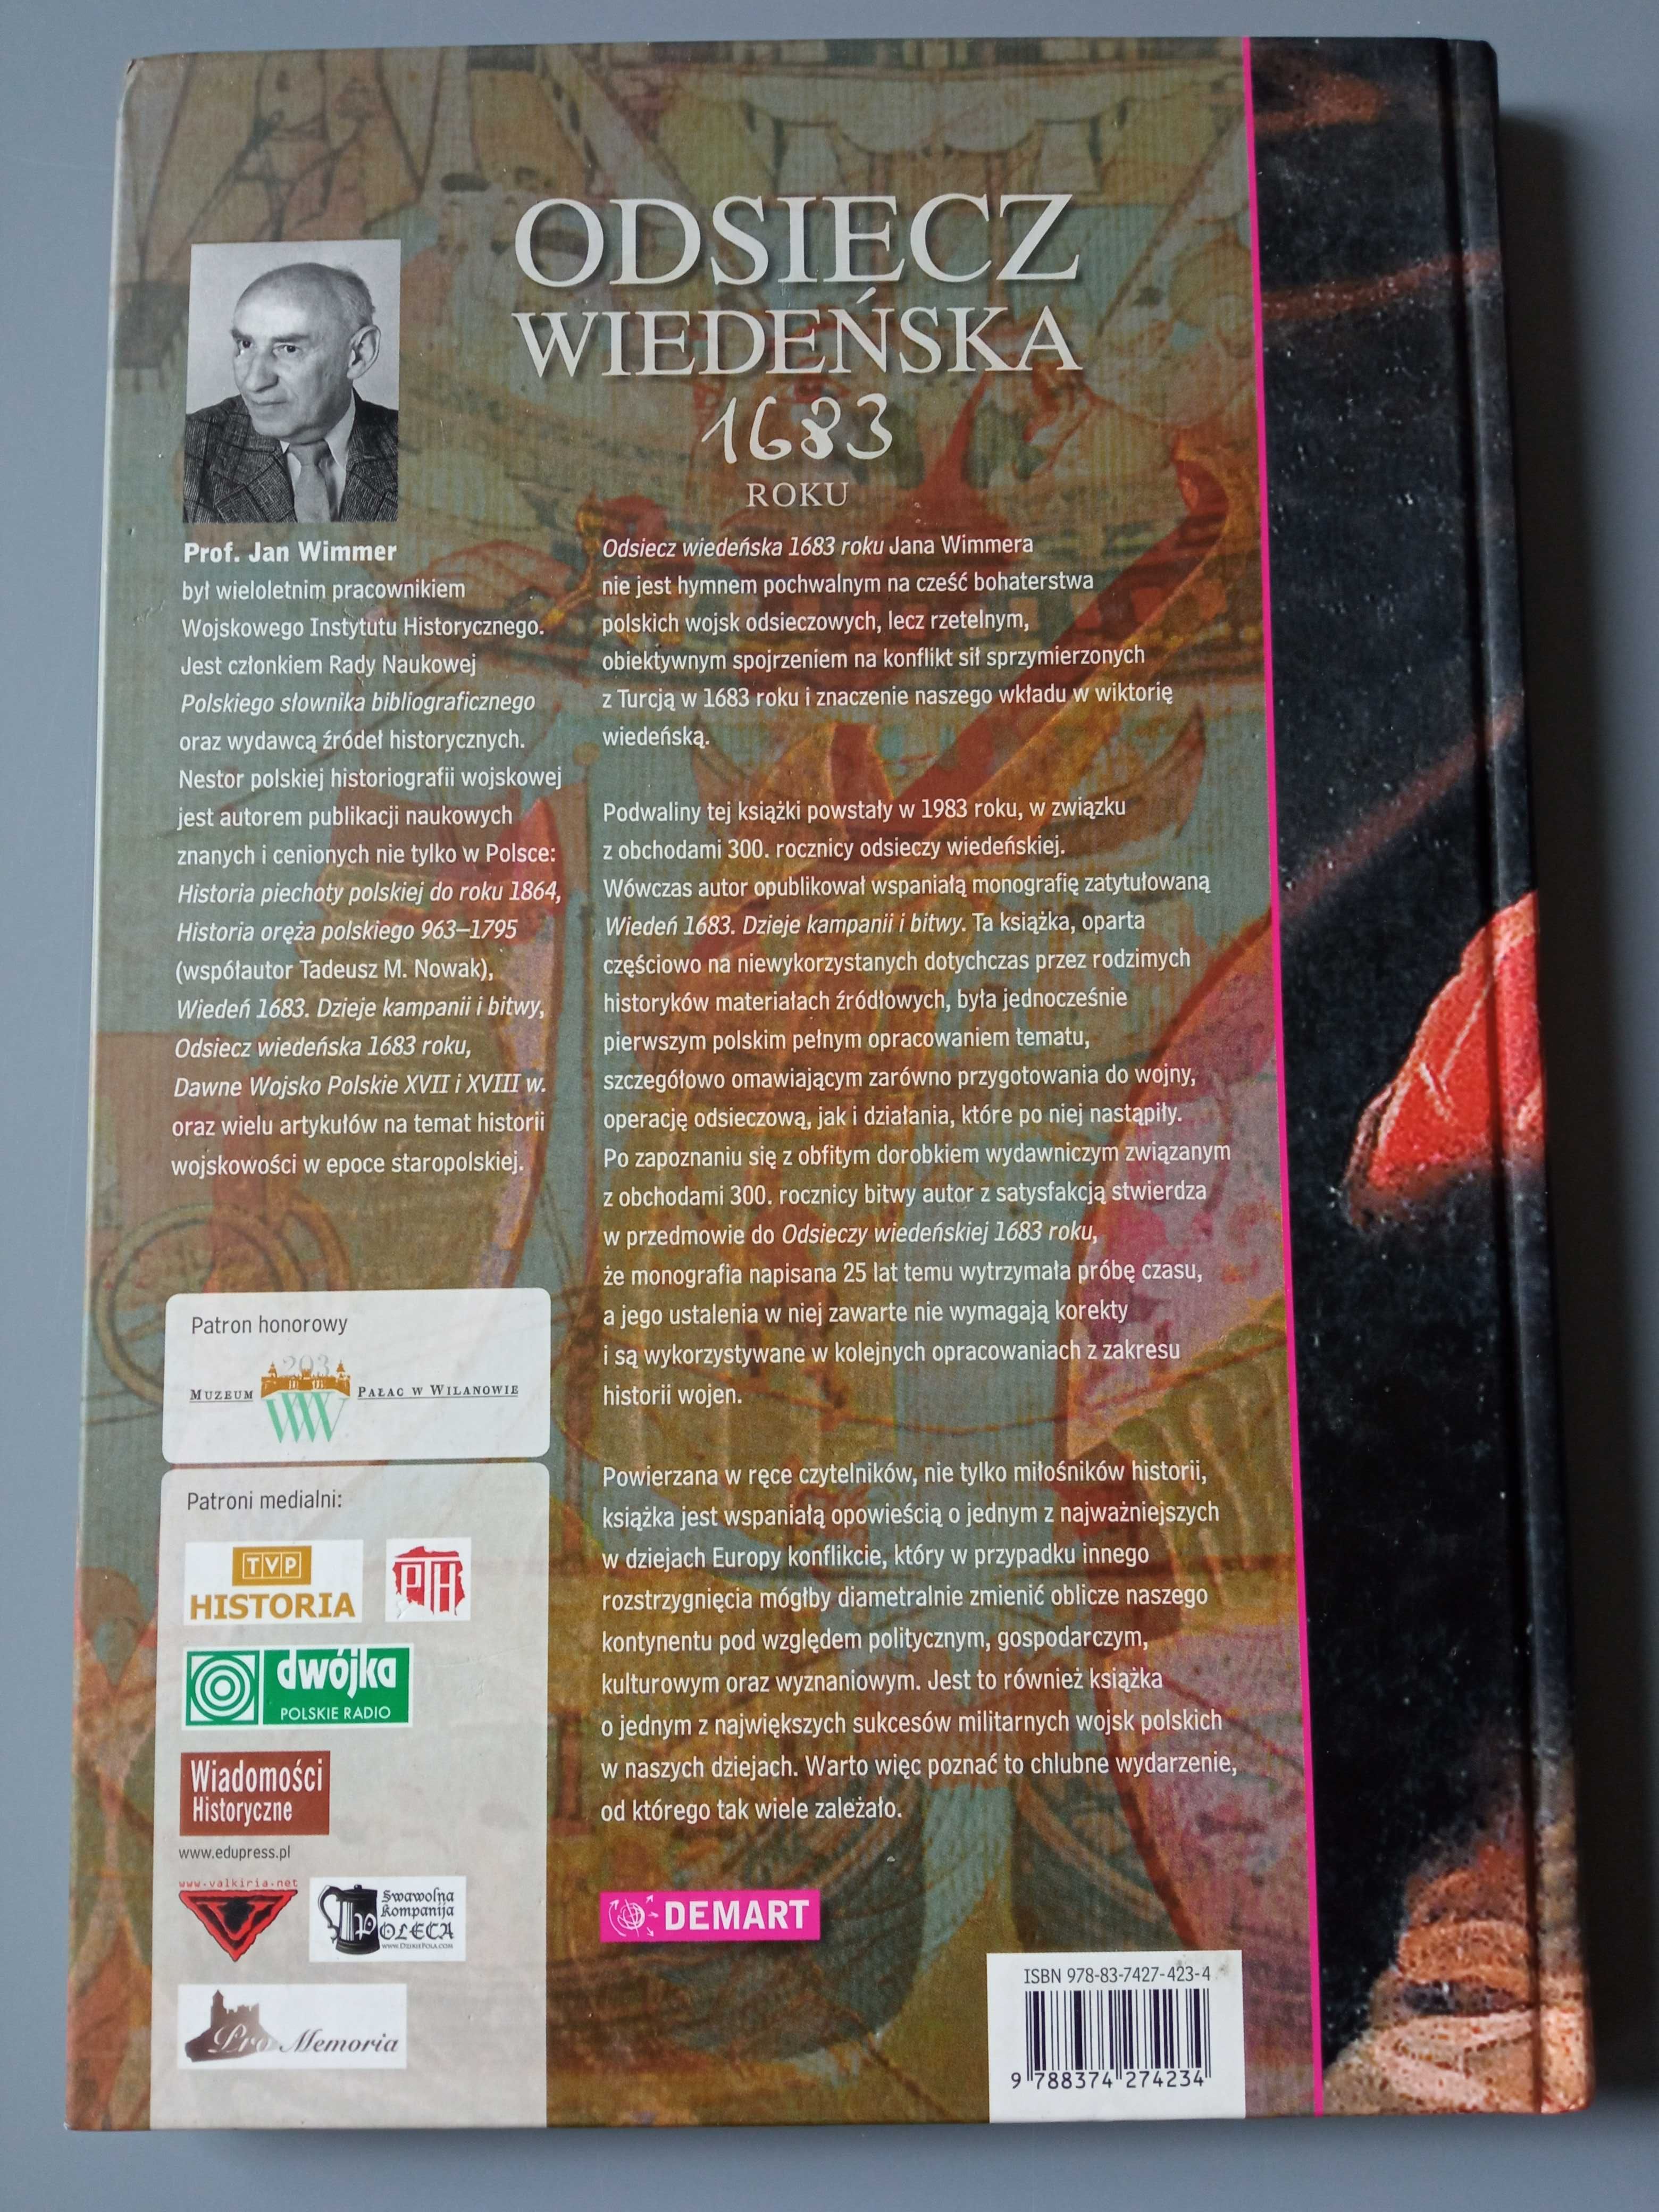 Odsiecz Wiedeńska 1683 roku Demart Jan Wimmer 2008 Książka Album